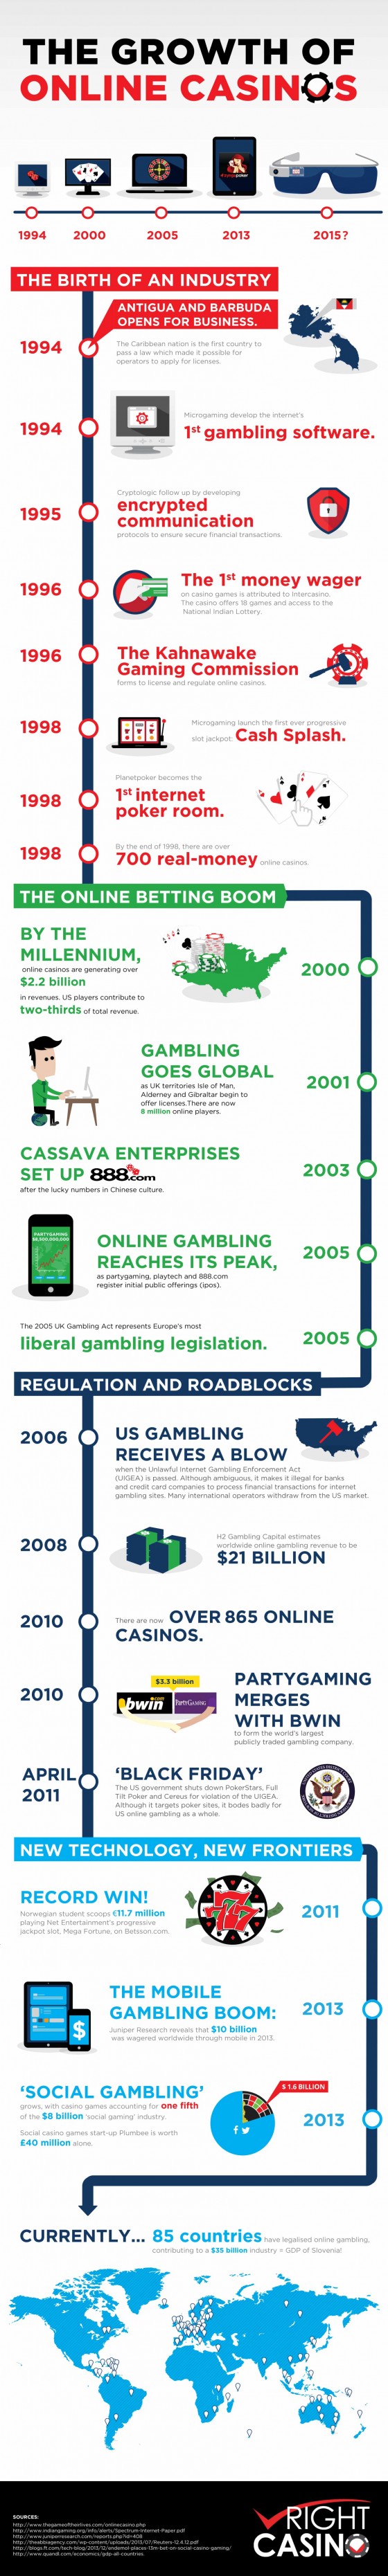 history-of-online-casinos